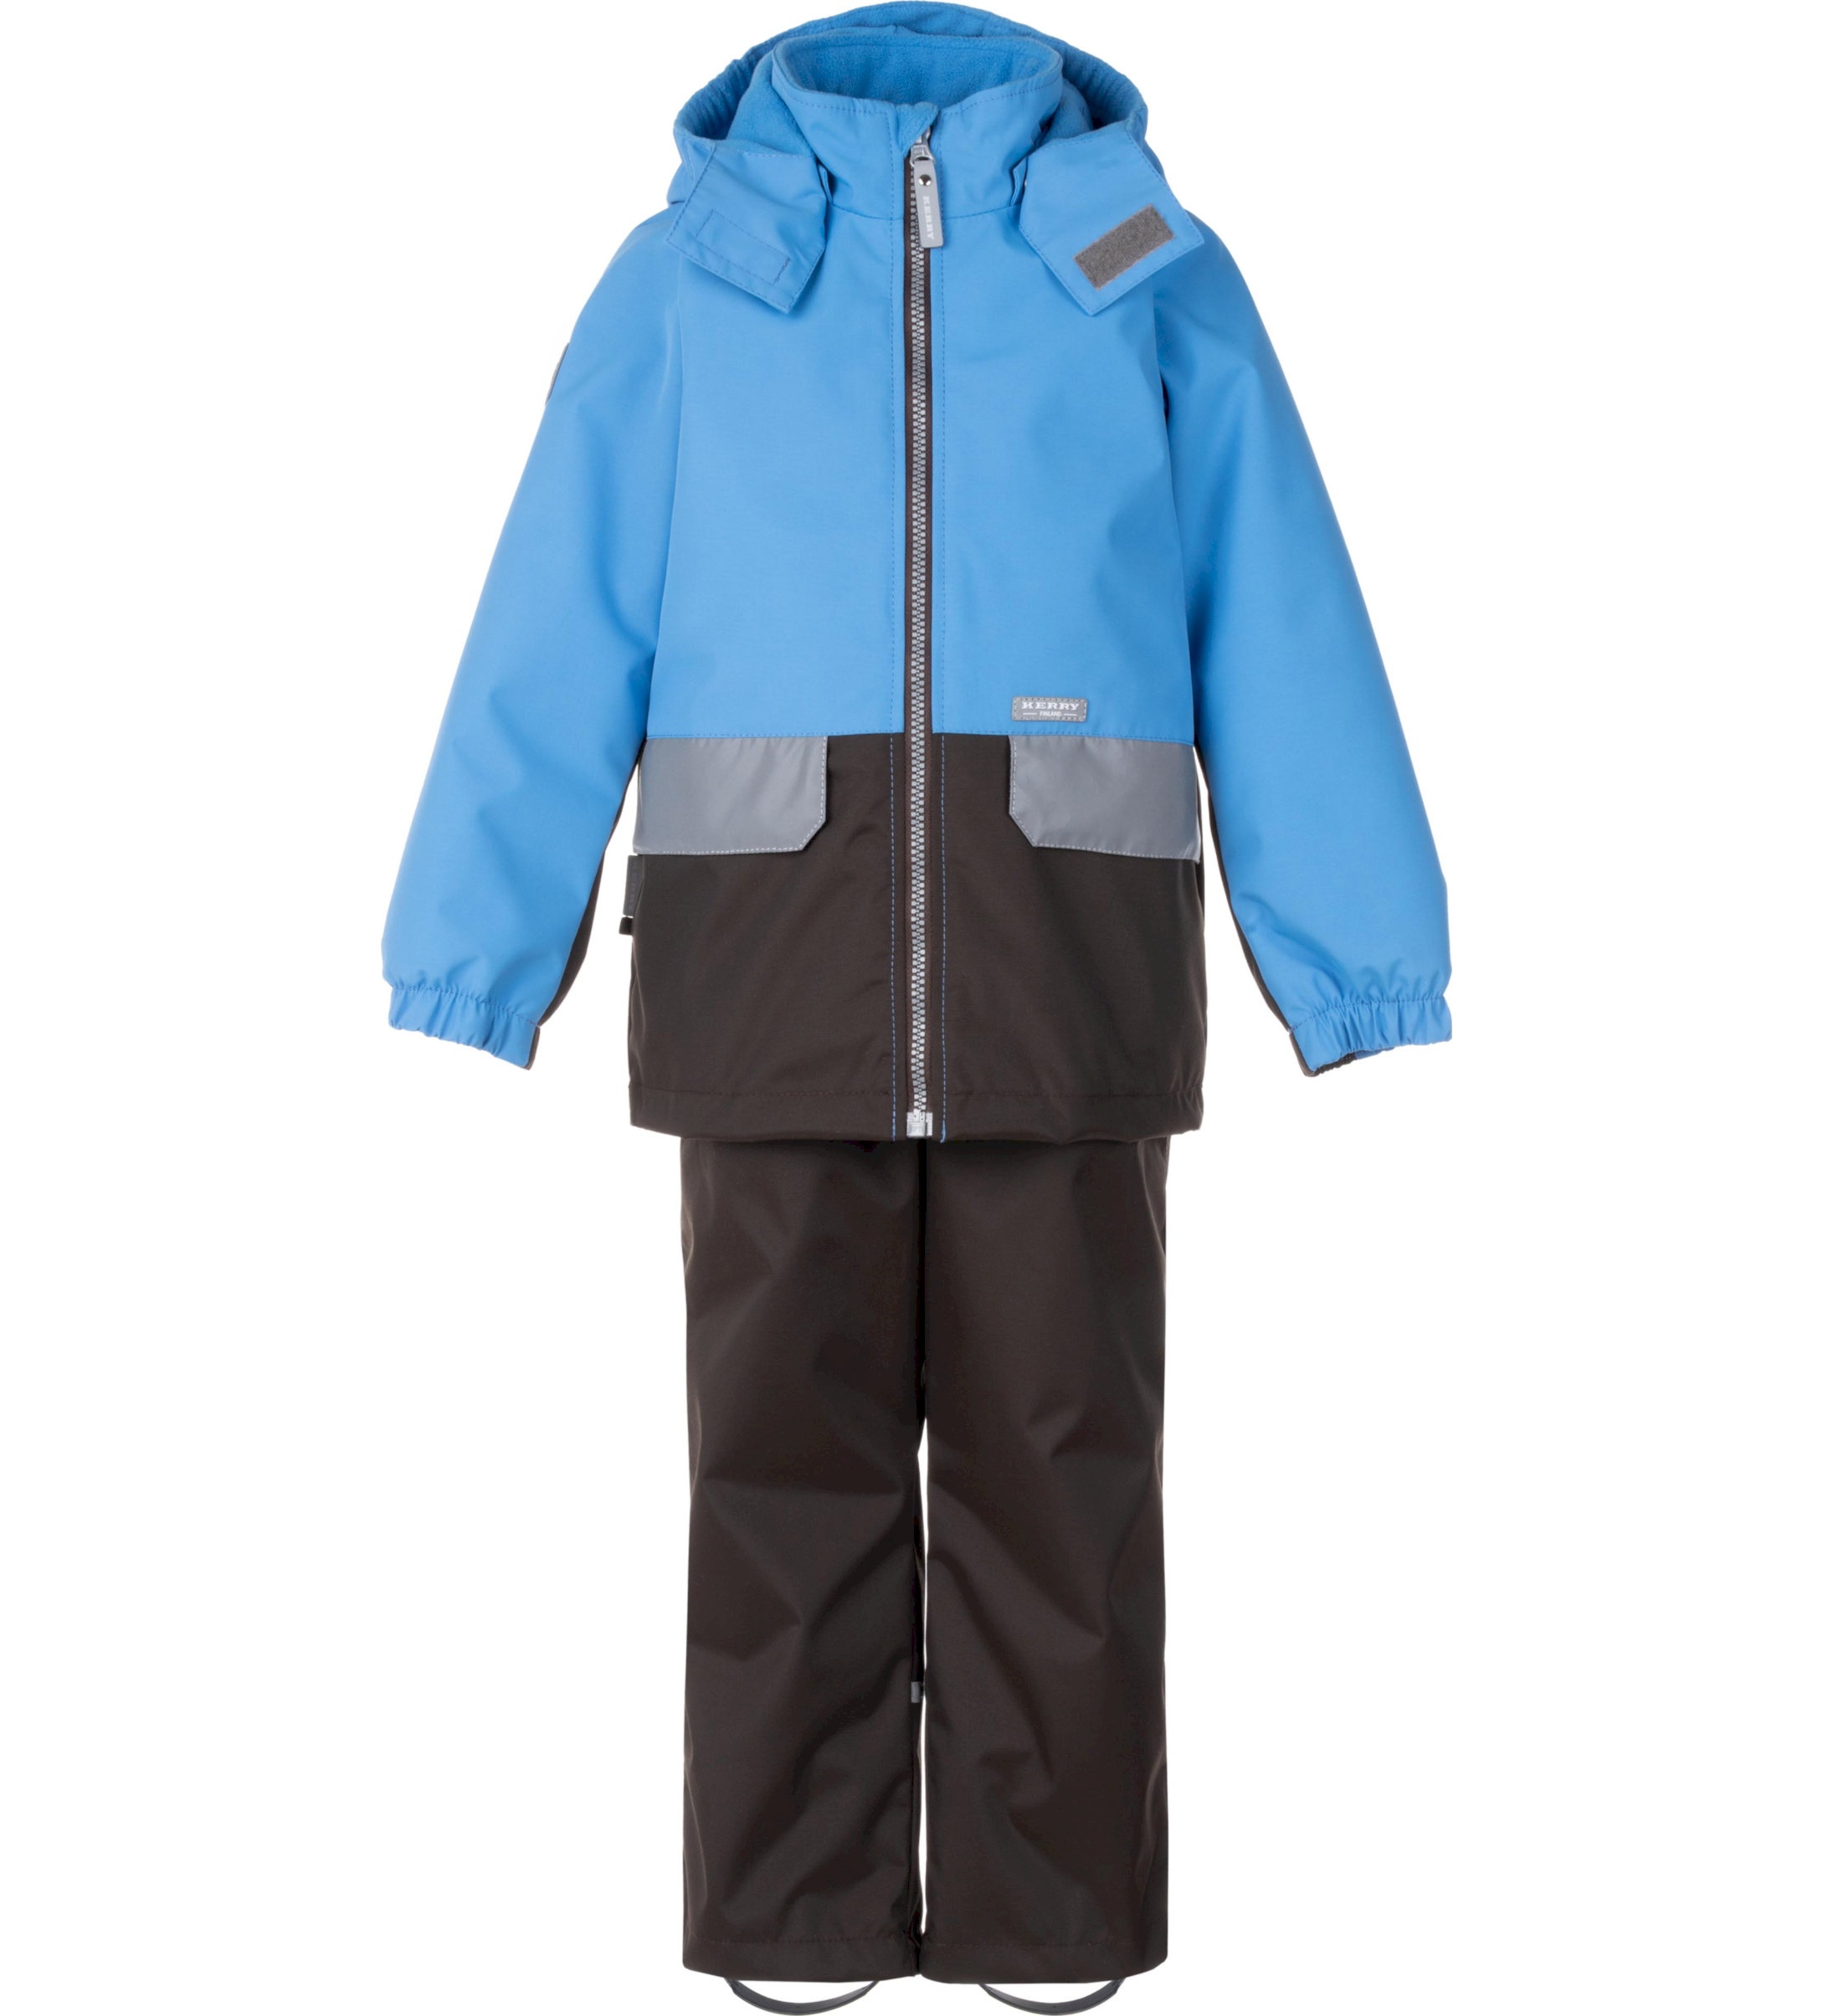 Комплект верхней одежды детский KERRY K24020, голубой; серый, 122 пылесос bort bac 500 22 900 вт сухая влажная уборка 22 л серый